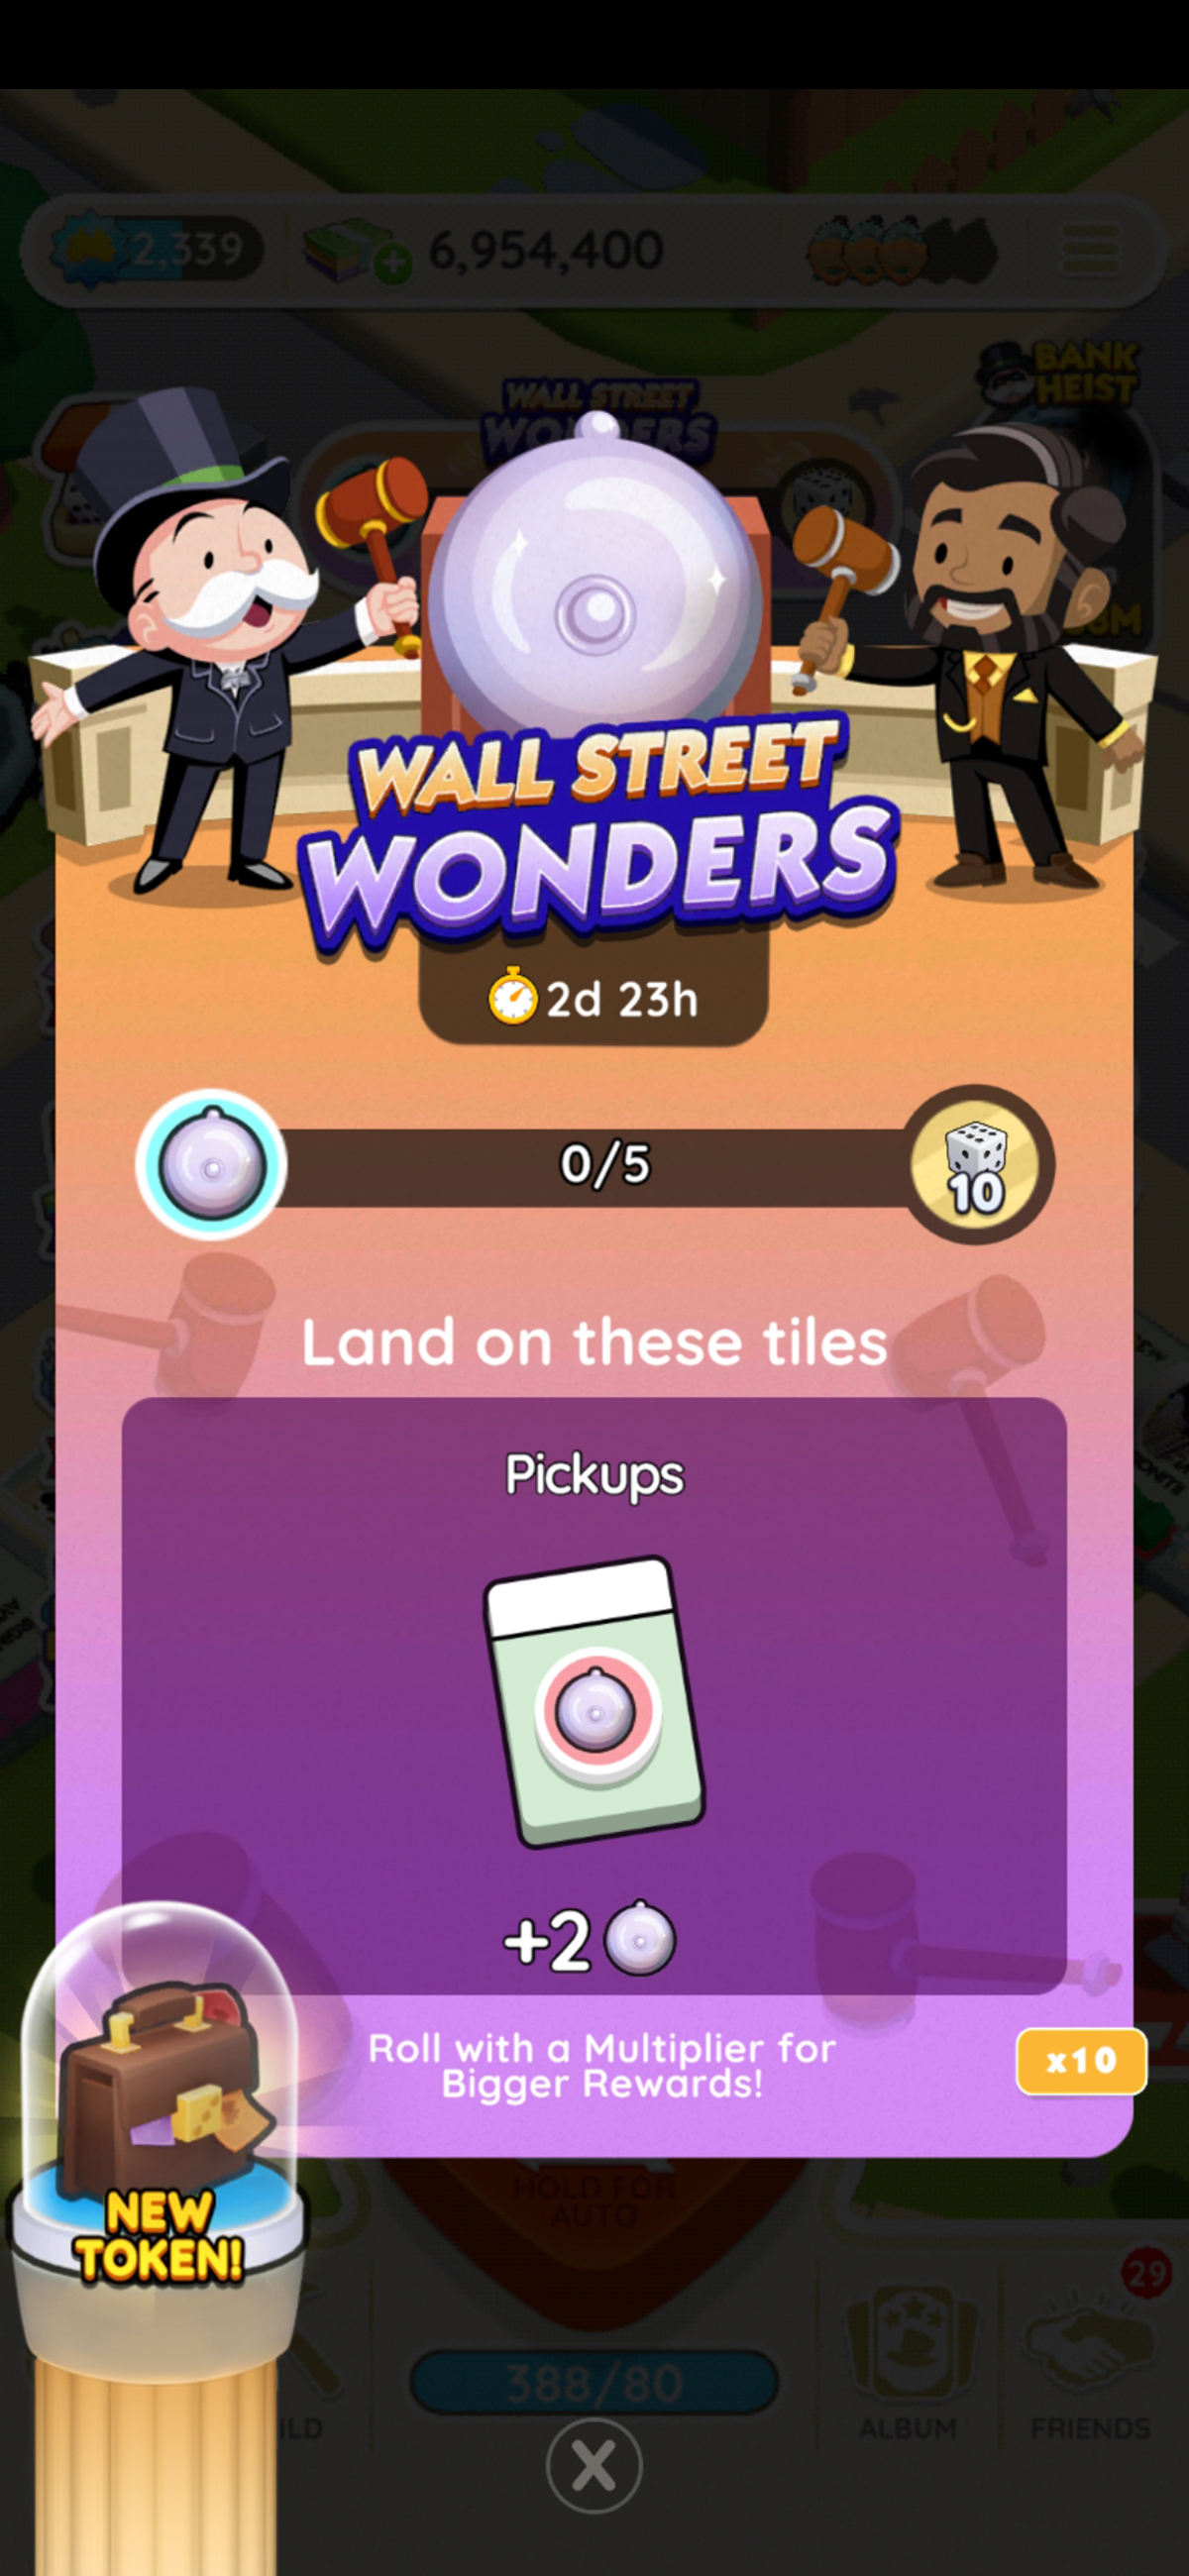 Une image des règles de l'événement Wall Street Wonders dans Monopoly GO.  L'image montre Rich Uncle Pennybags sur le côté gauche d'une cloche avec un autre homme sur le côté droit sur le point de la sonner.  Tous deux tiennent des marteaux.